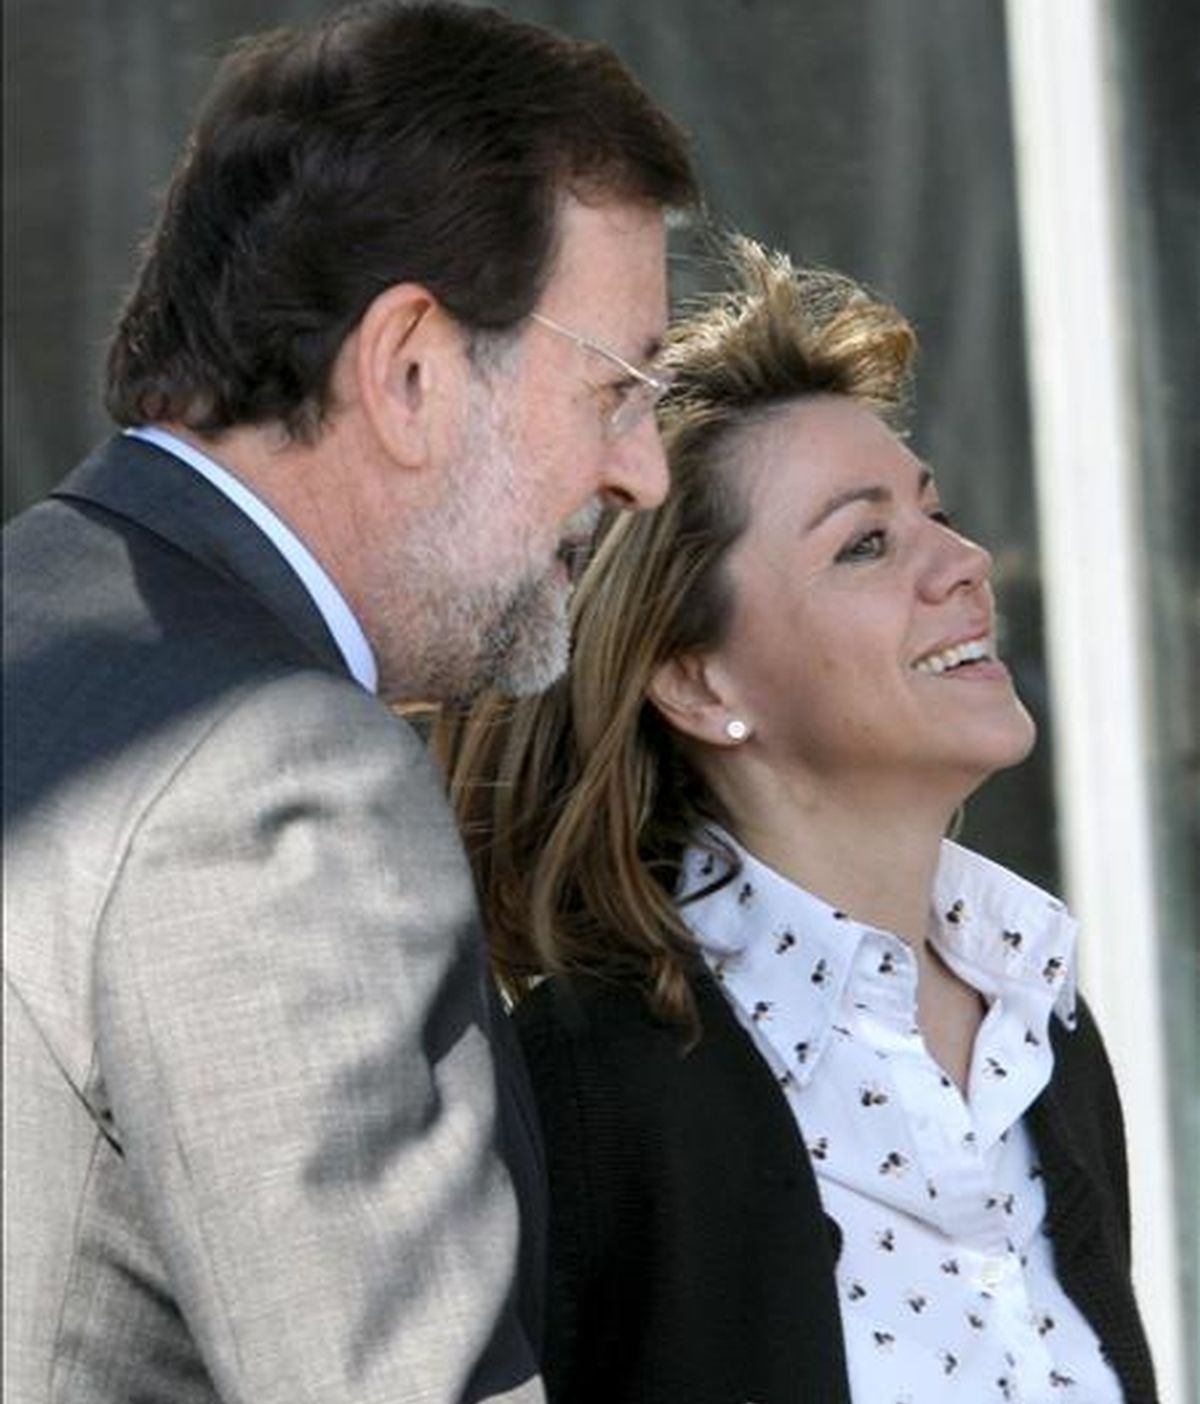 En la imagen, el líder del PP, Mariano Rajoy, junto a la secretaria general del partido, María Dolores de Cospedal, a su llegada a la reunión de la Junta Directiva del Partido Popular. EFE/Archivo